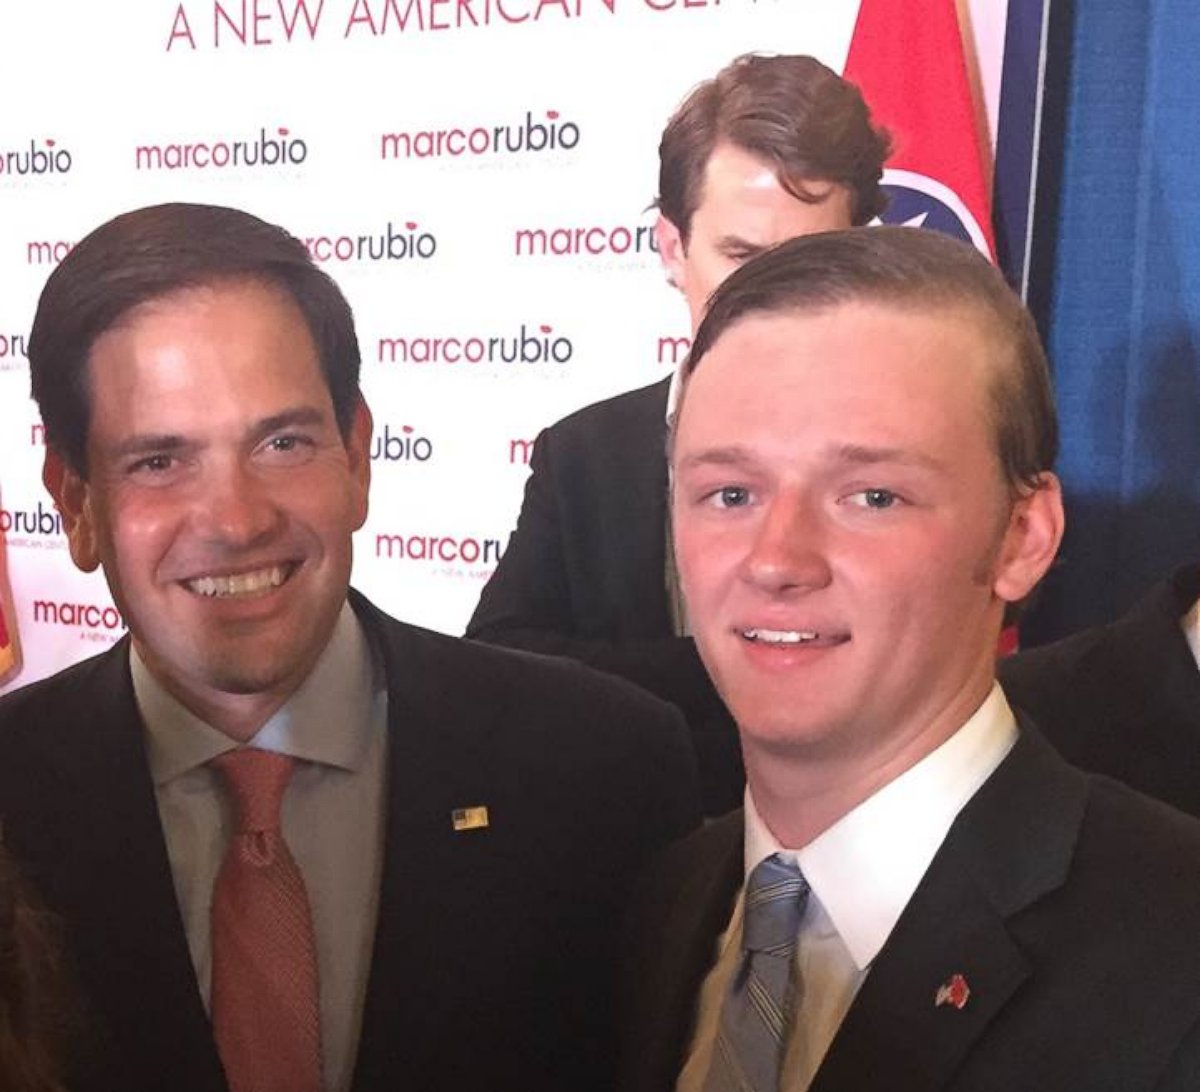 PHOTO: Luke Elliott is seen here with Marco Rubio.